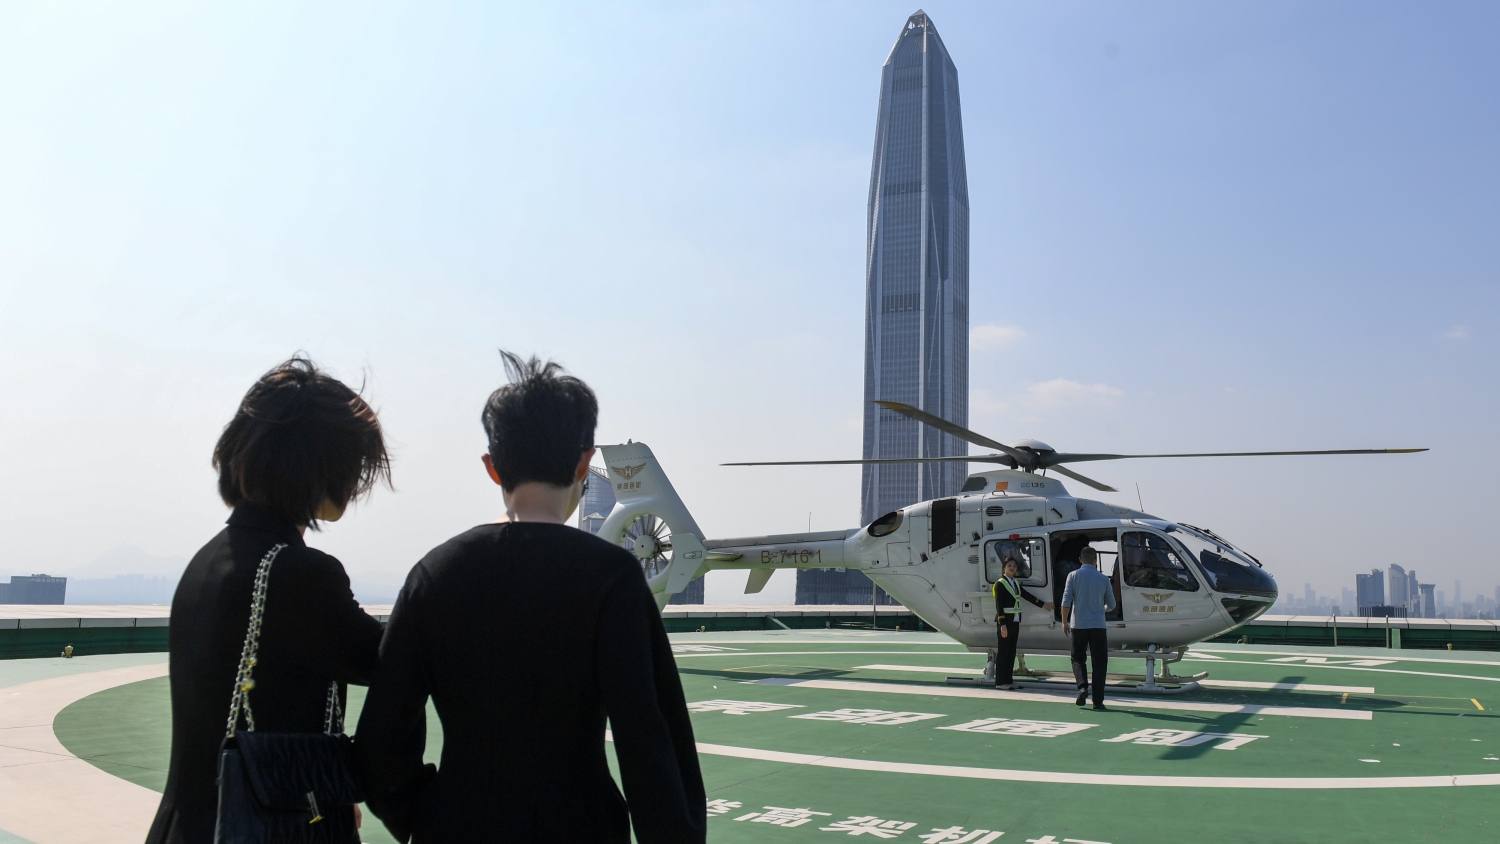 深圳低空航線崛起 「空中的士」版圖擴張